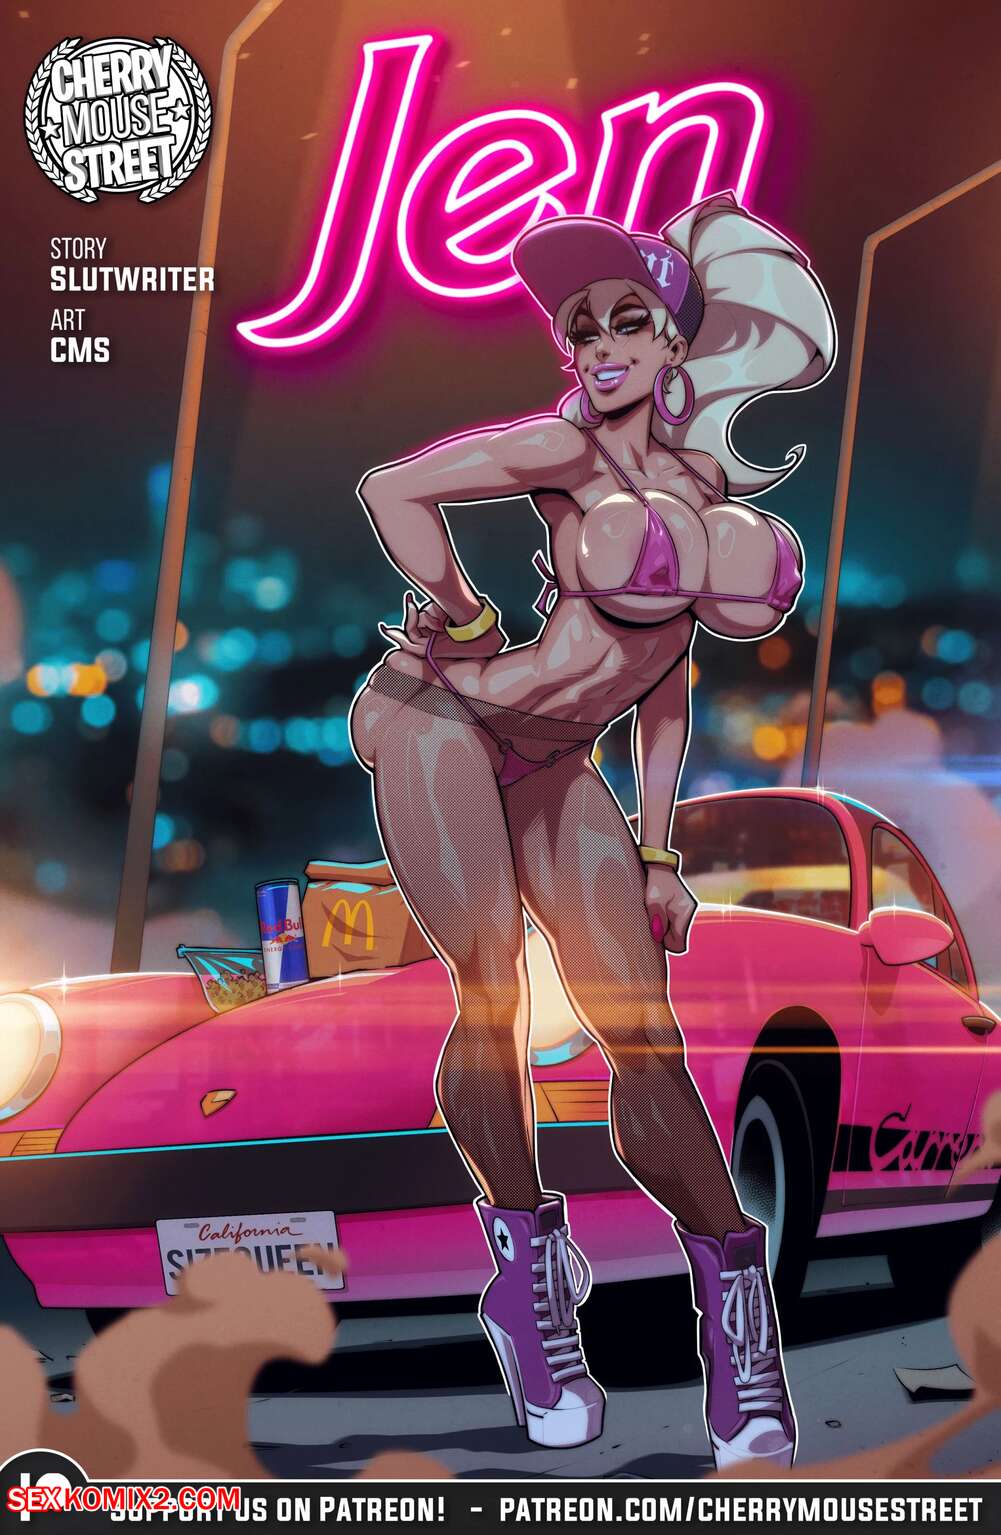 Hentai Mouse Slut - âœ…ï¸ Porn comic Jen. Chapter 1. Cherry Mouse Street , SlutWriter. Sex comic  blonde beauty has | Porn comics in English for adults only | sexkomix2.com